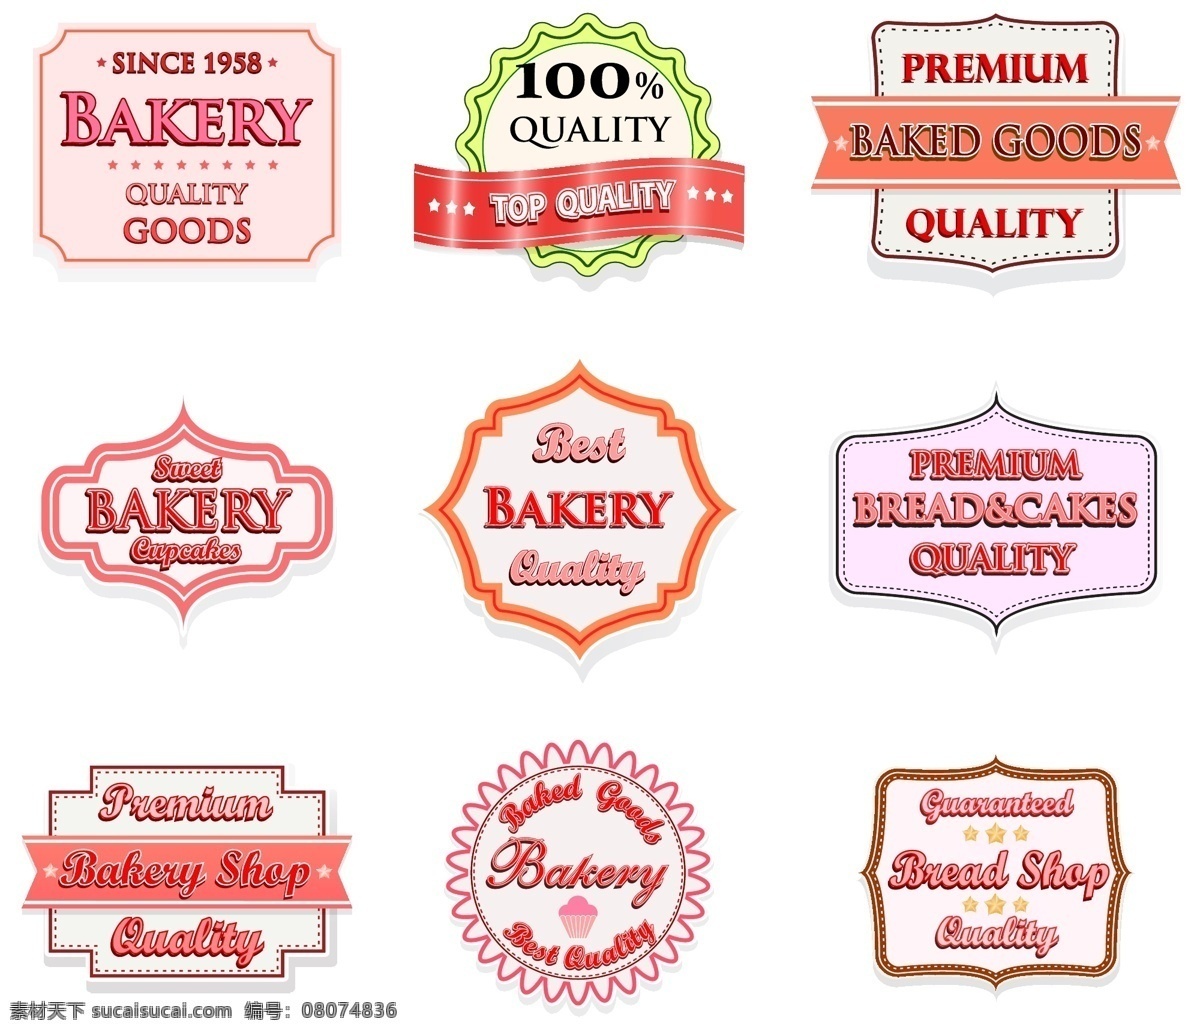 面包店 标签 矢量 模板 标签模板 标签设计 促销标签 粉色丝带 精美边框 设计稿 素材元素 粉色标签 源文件 矢量图